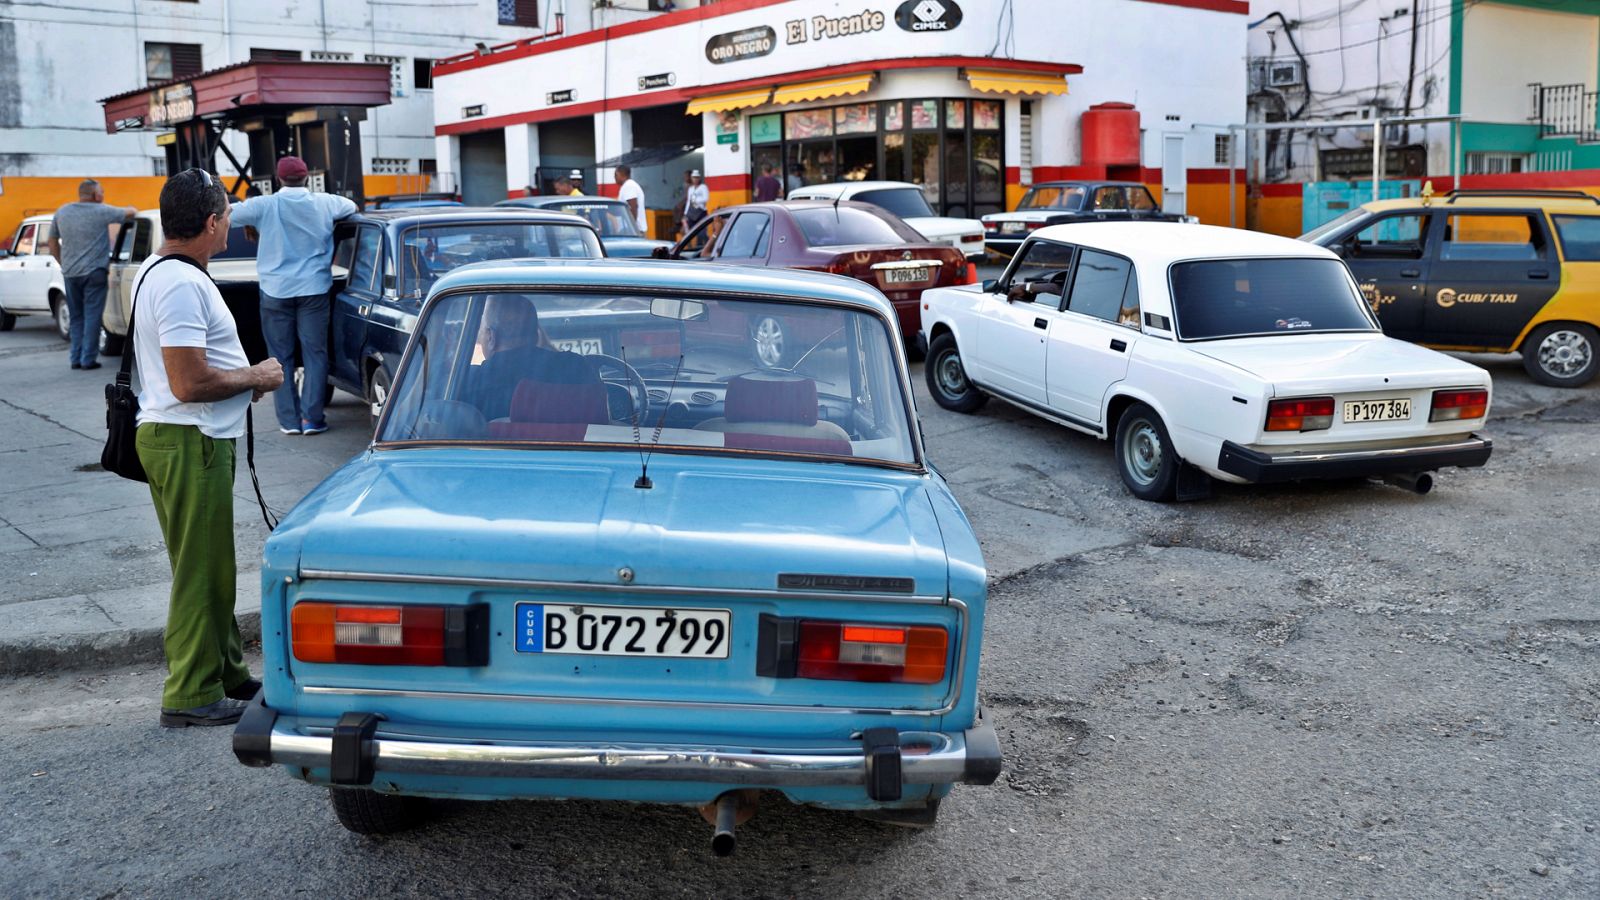 Venta de coches de segunda mano en Cuba a precios inalcanzables para sus ciudadanos- RTVE.es